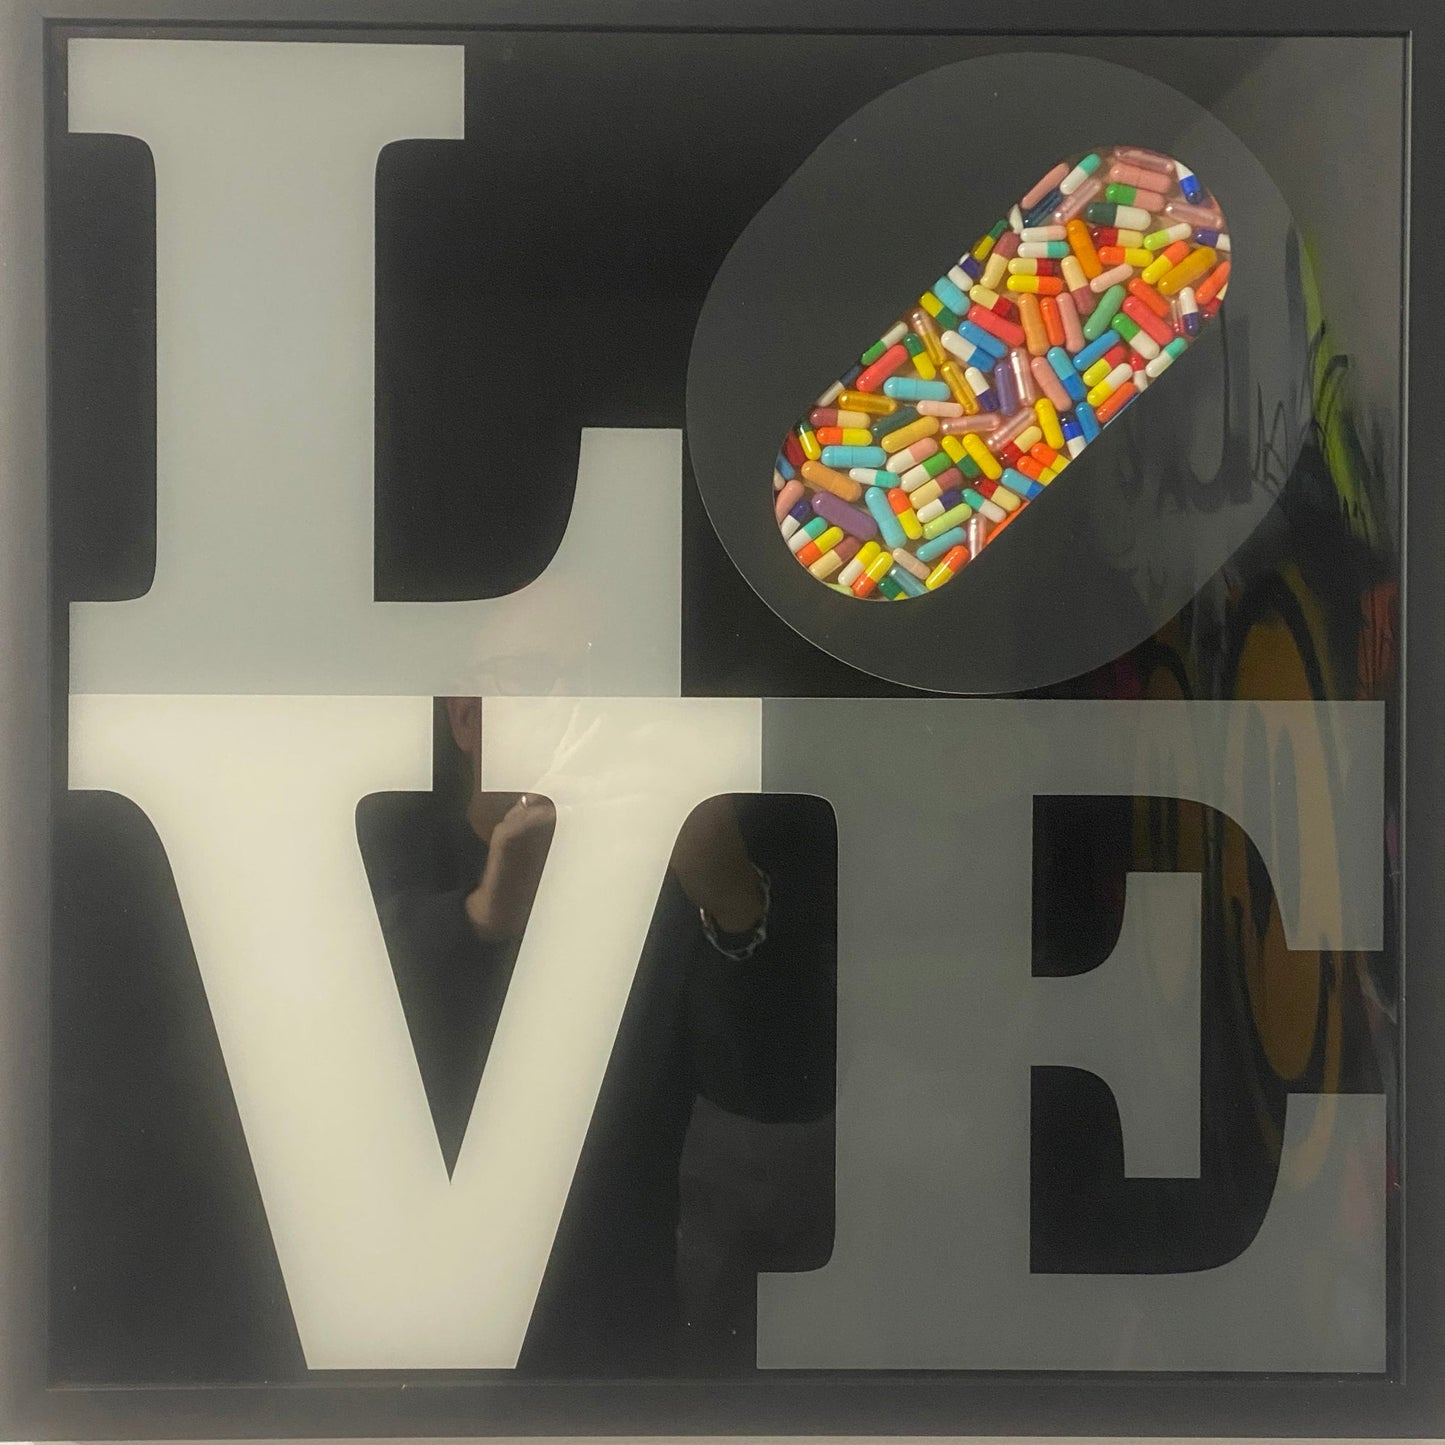 LOVE IS THE DRUG mono edition - Smolensky Gallery